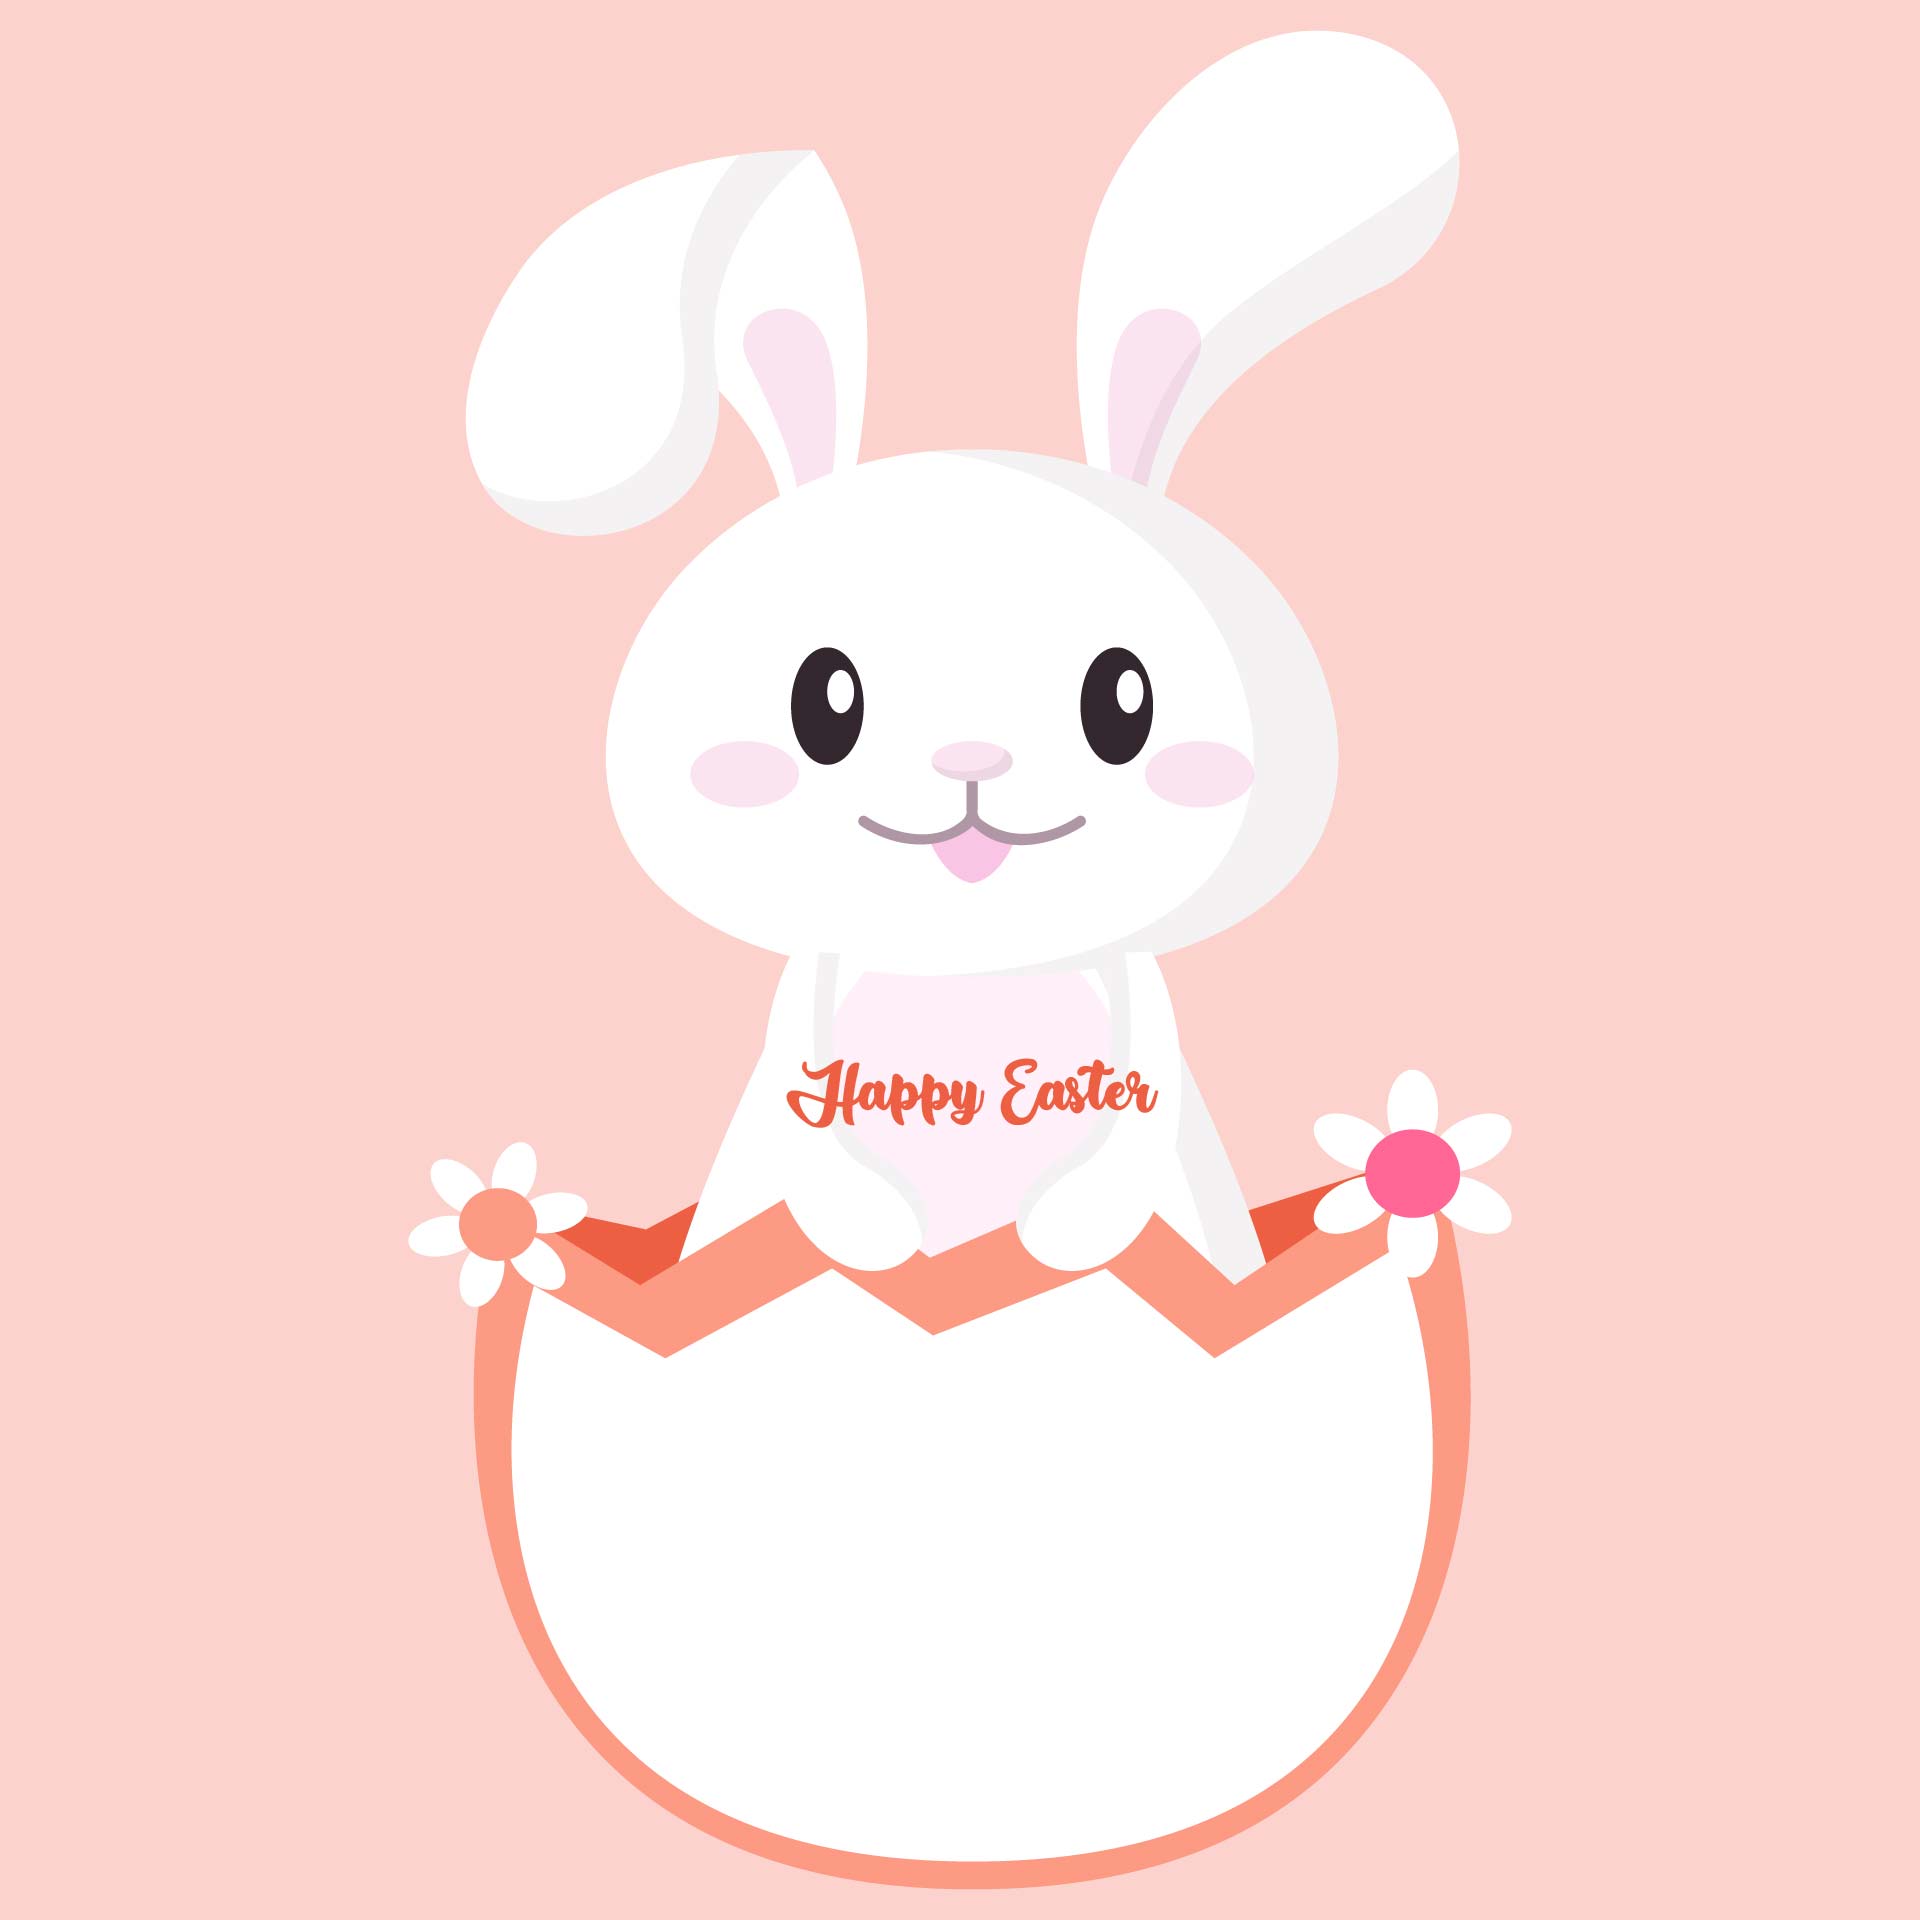 Printable Easter Bunny Card